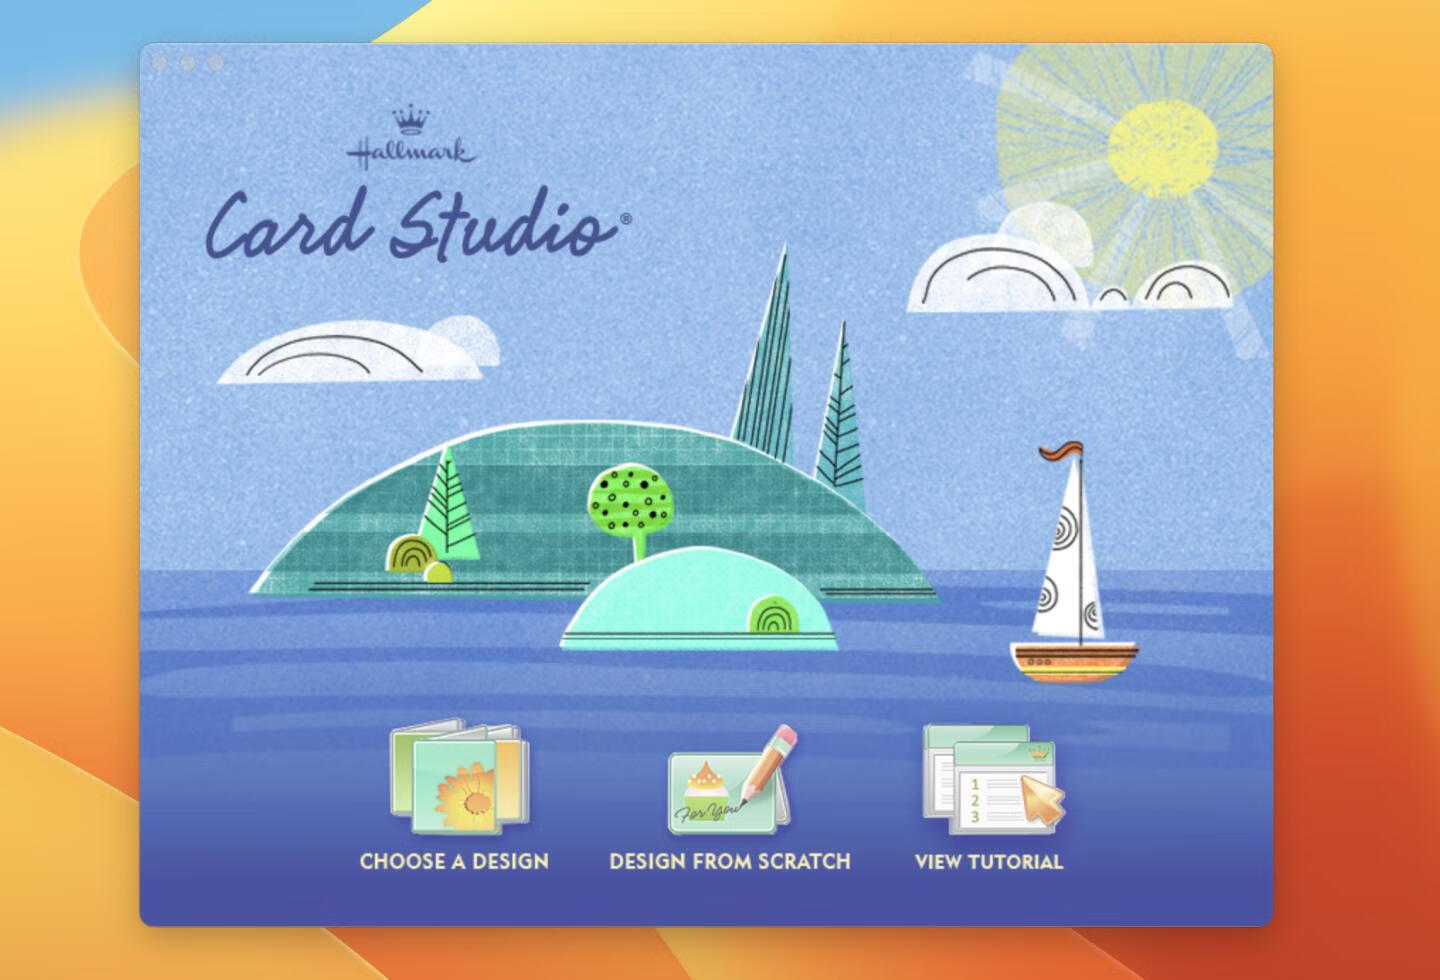 Hallmark Card Studio 2020 for Mac v22.0.0.7英文激活版 贺卡设计制作软件